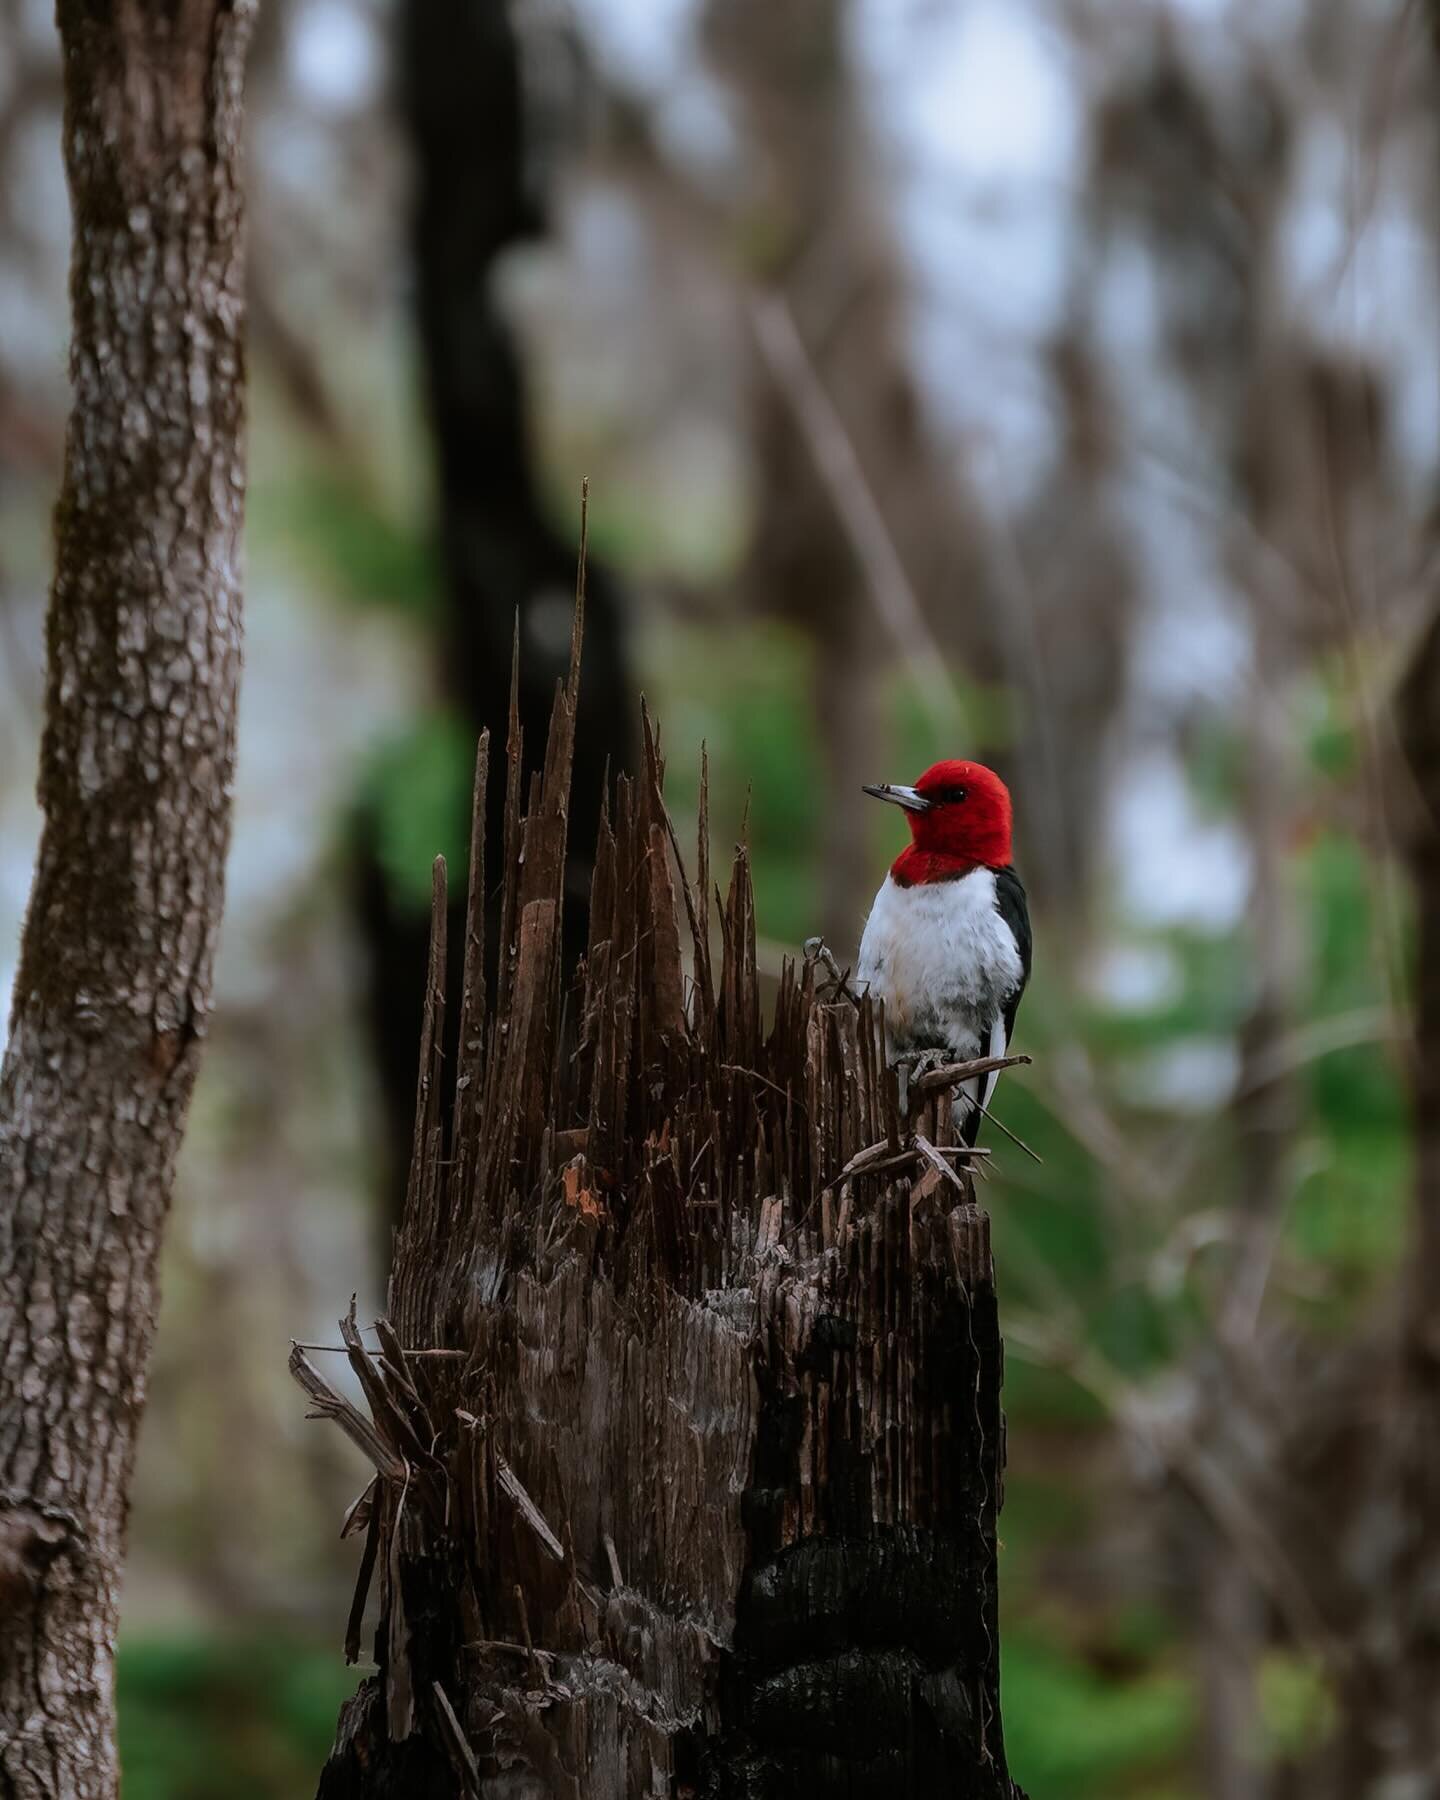 Red-headed woodpecker 😍 
Este chiquitin se nos cruz&oacute; en el camino de forma inesperada!!! Y es la primera vez que veo uno de estos. Hay algo en estos p&aacute;jaros carpinteros que es demasiado fascinante!! Un recuerdo que quedar&aacute; de lo